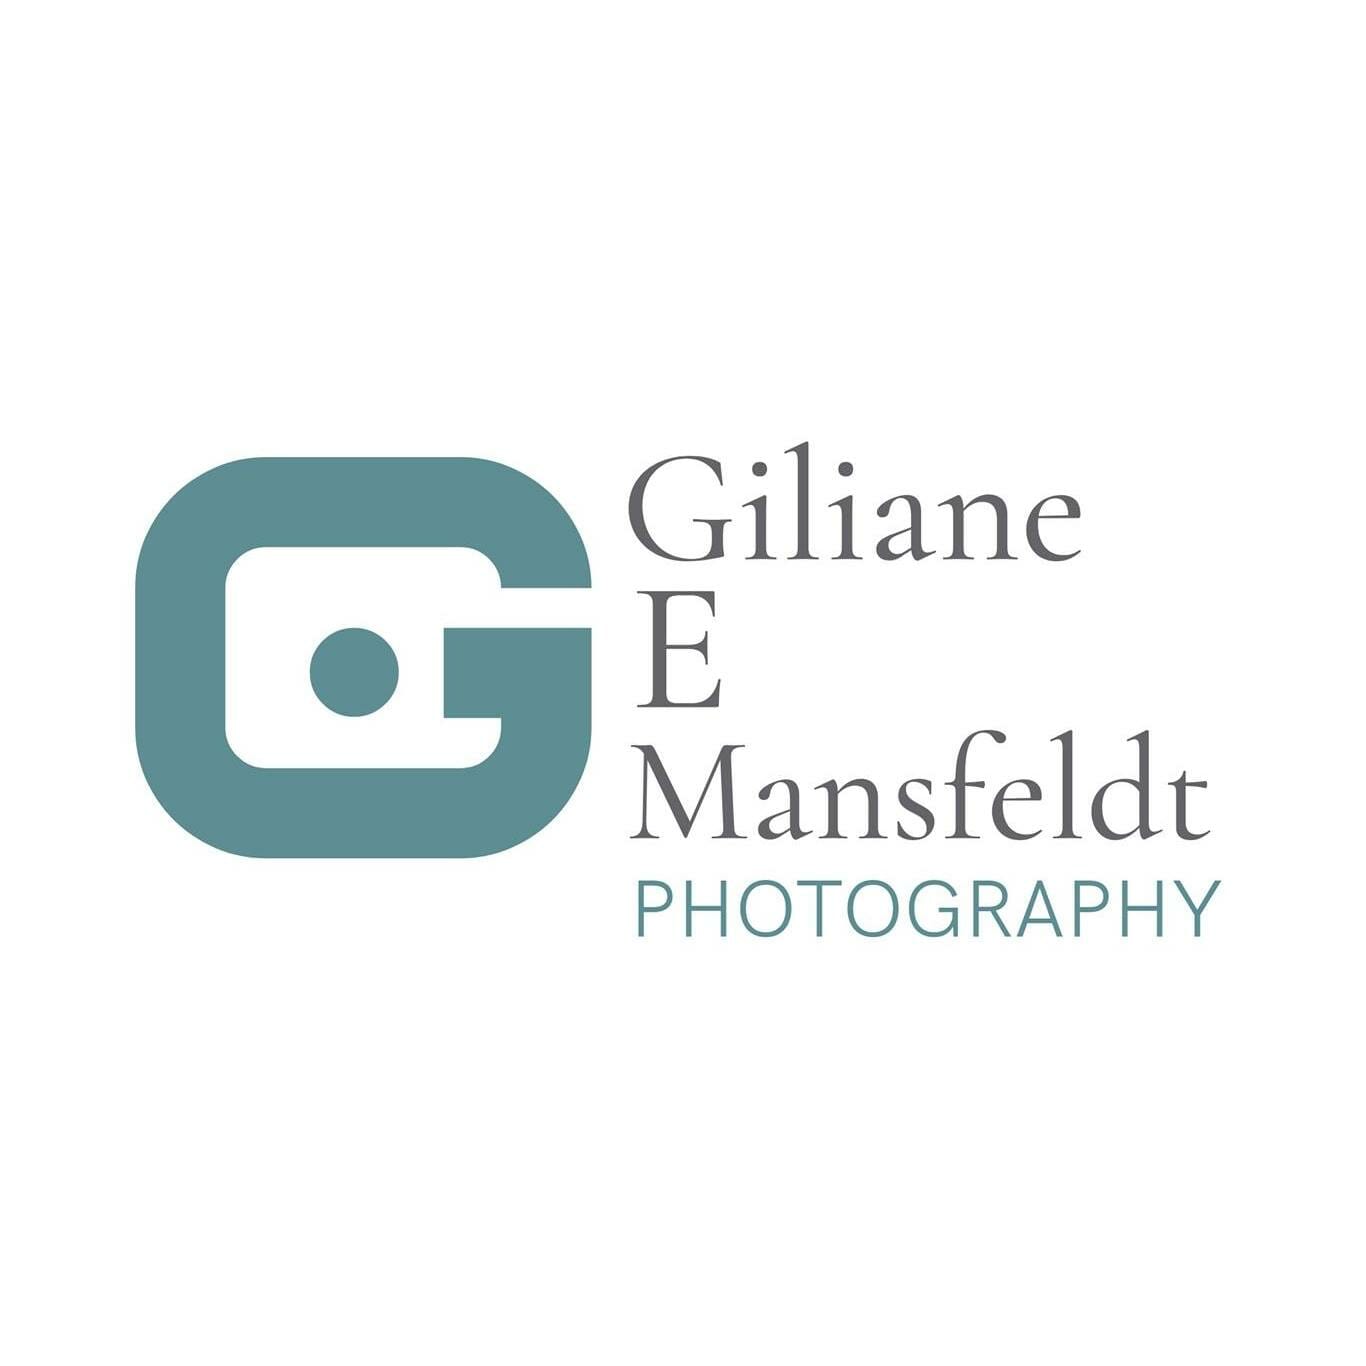 Gillian e mansfield photography logo.